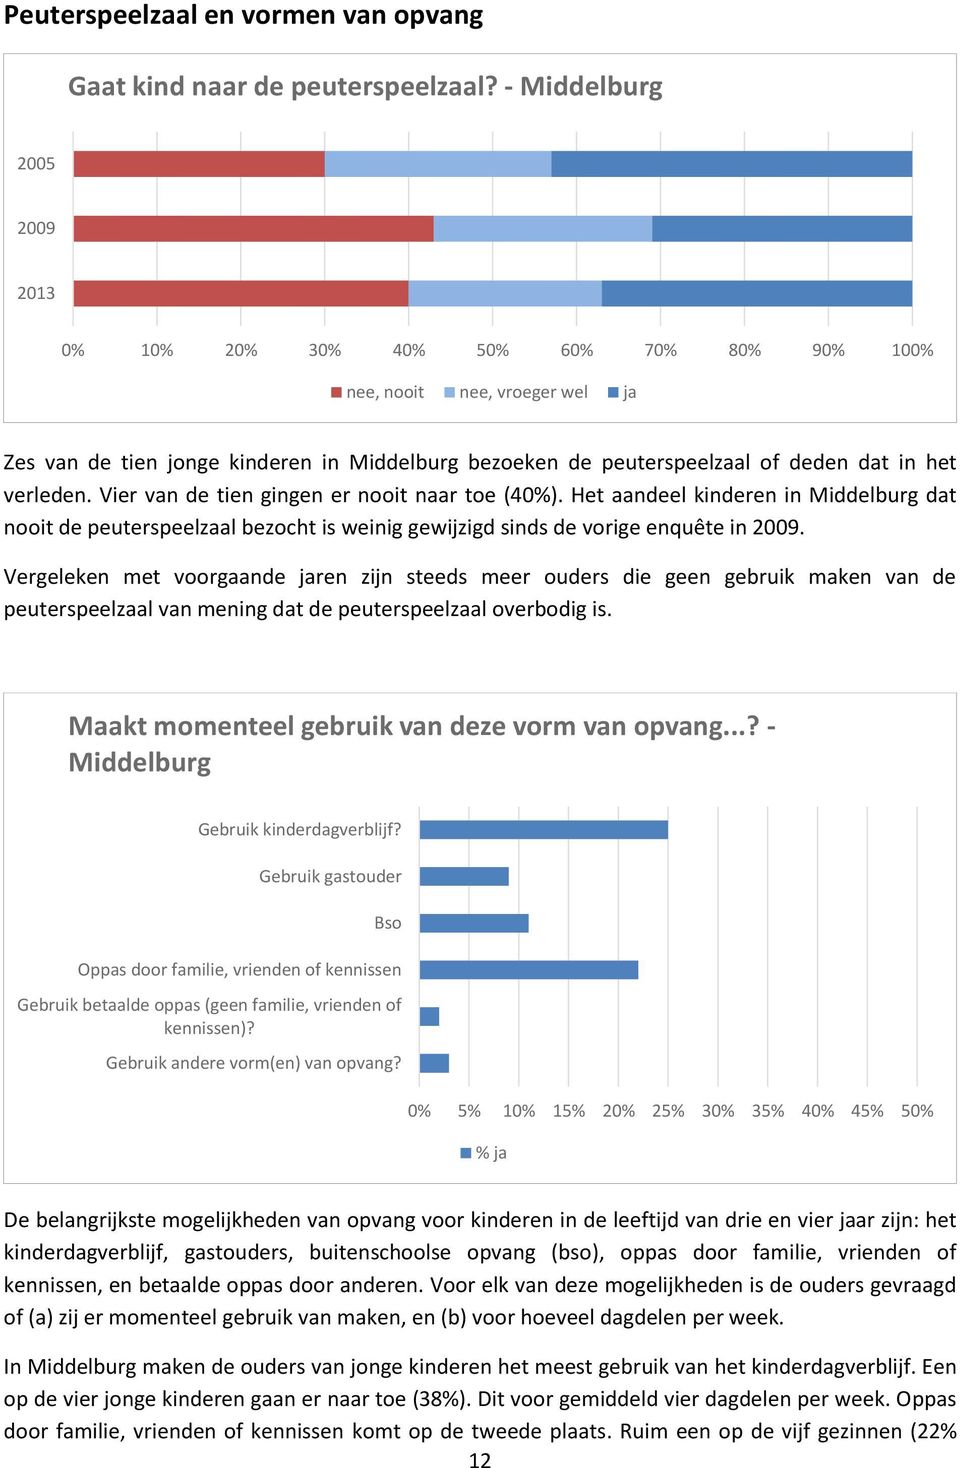 Vier van de tien gingen er nooit naar toe (40%). Het aandeel kinderen in Middelburg dat nooit de peuterspeelzaal bezocht is weinig gewijzigd sinds de vorige enquête in 2009.